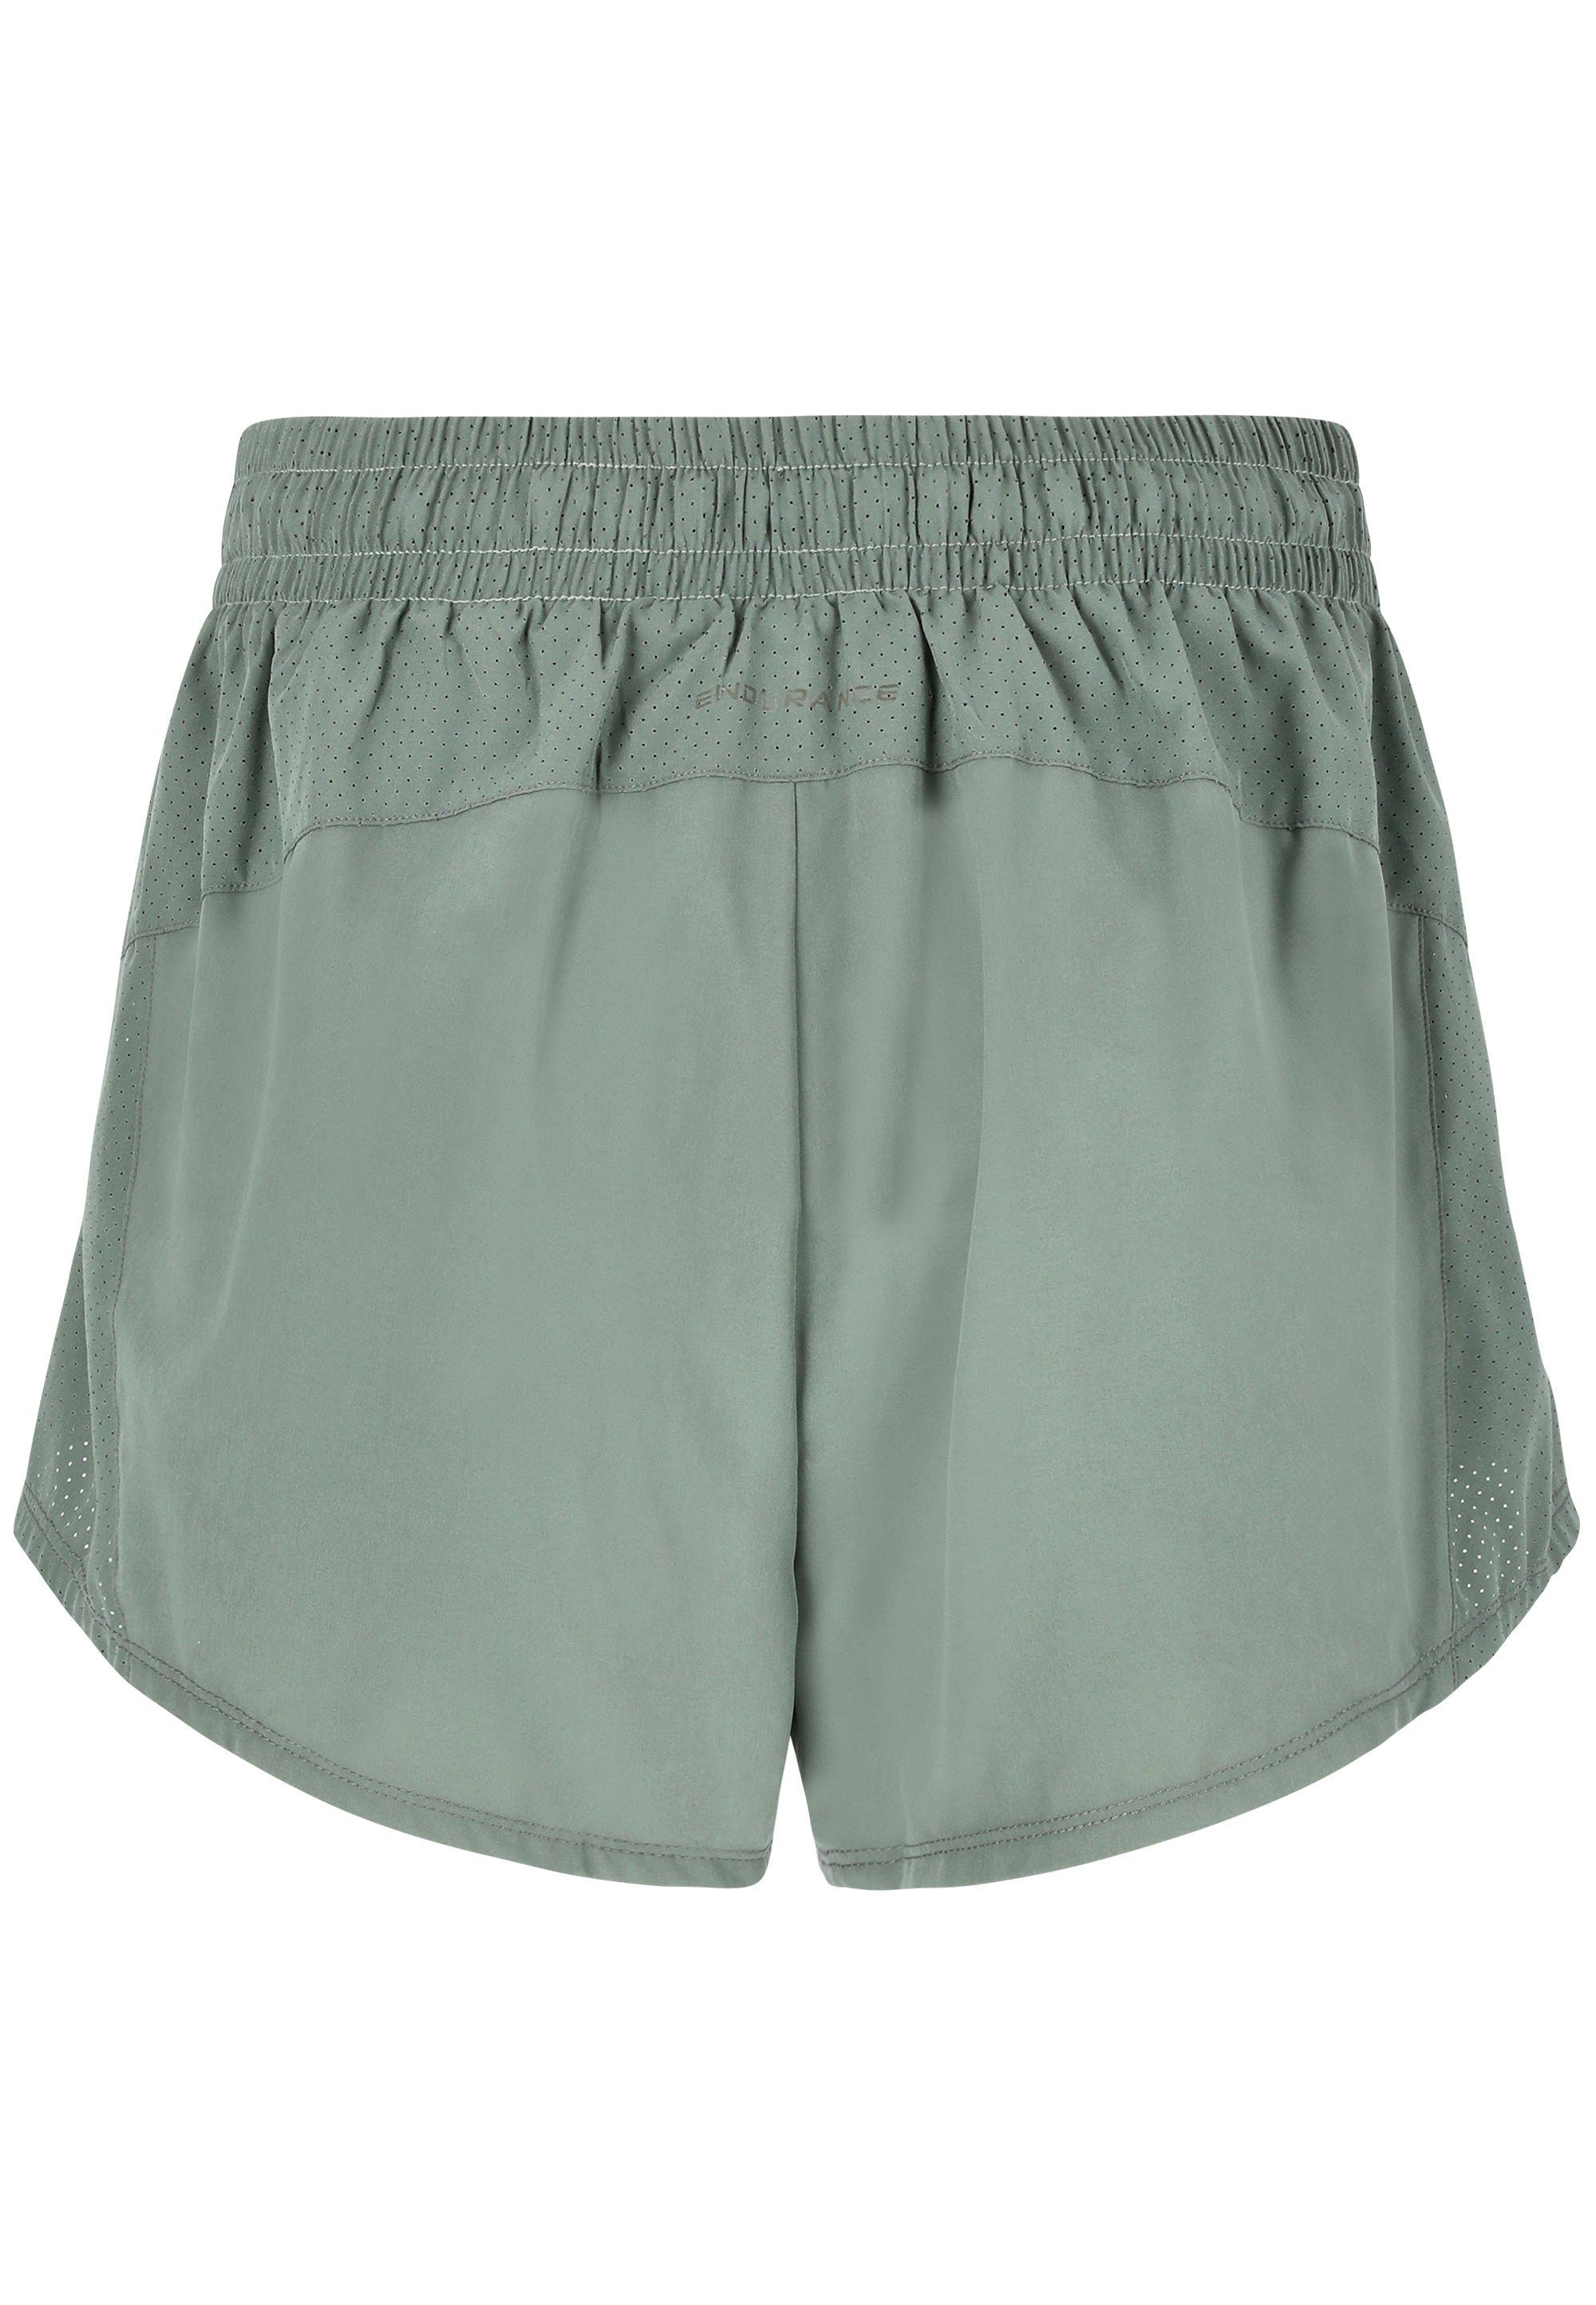 ENDURANCE Shorts Eslaire mit praktischen Taschen dunkelgrün